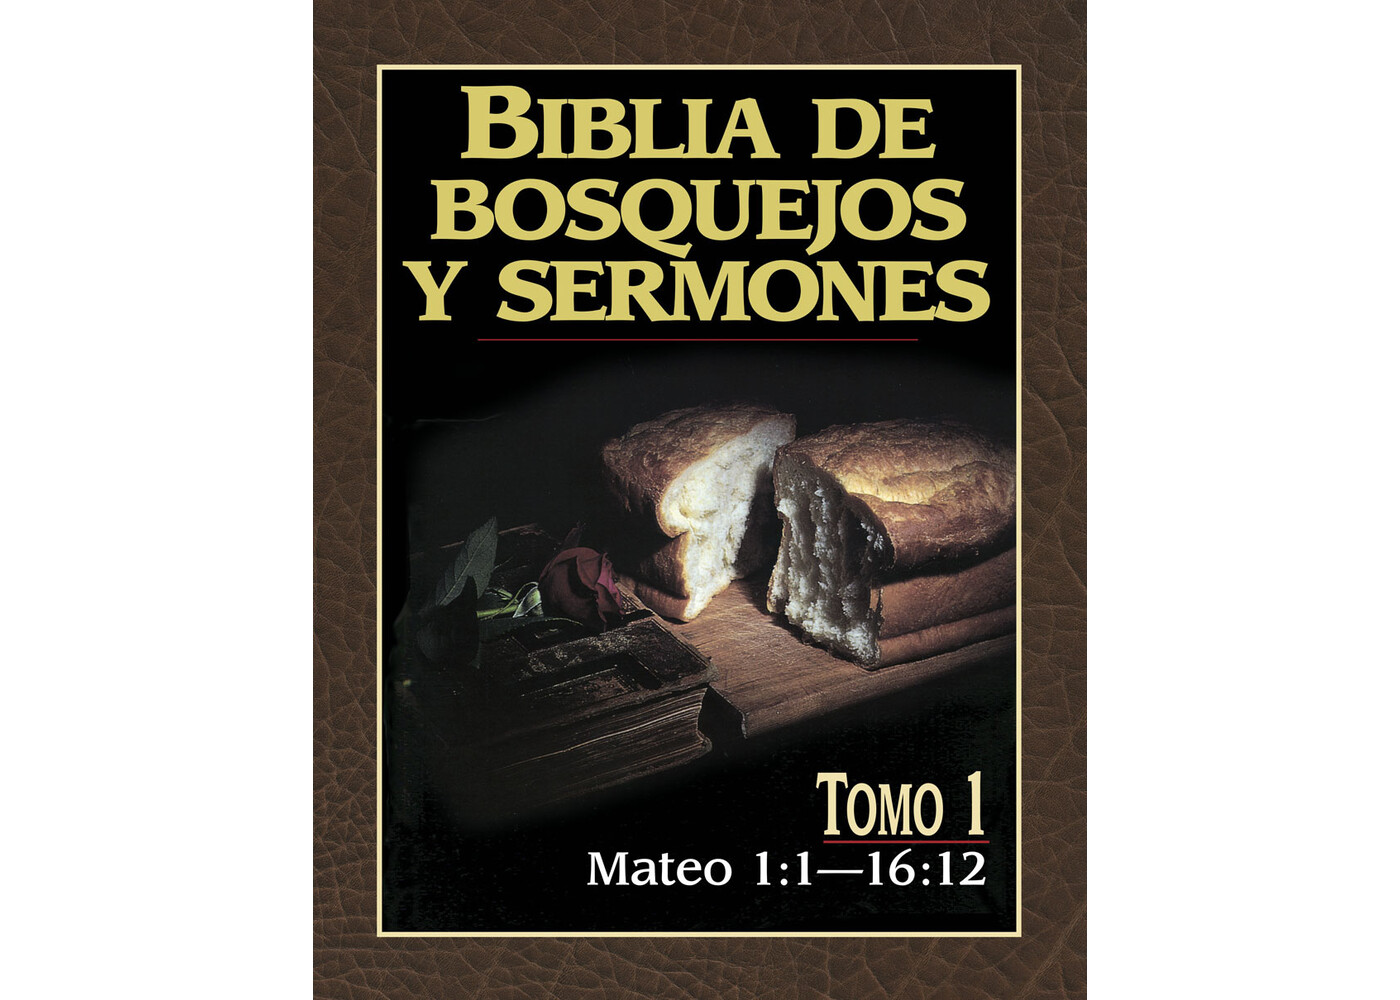 PORTAVOZ BIBLIA DE BOSQUEJOS Y SERMONES: MATEO 1